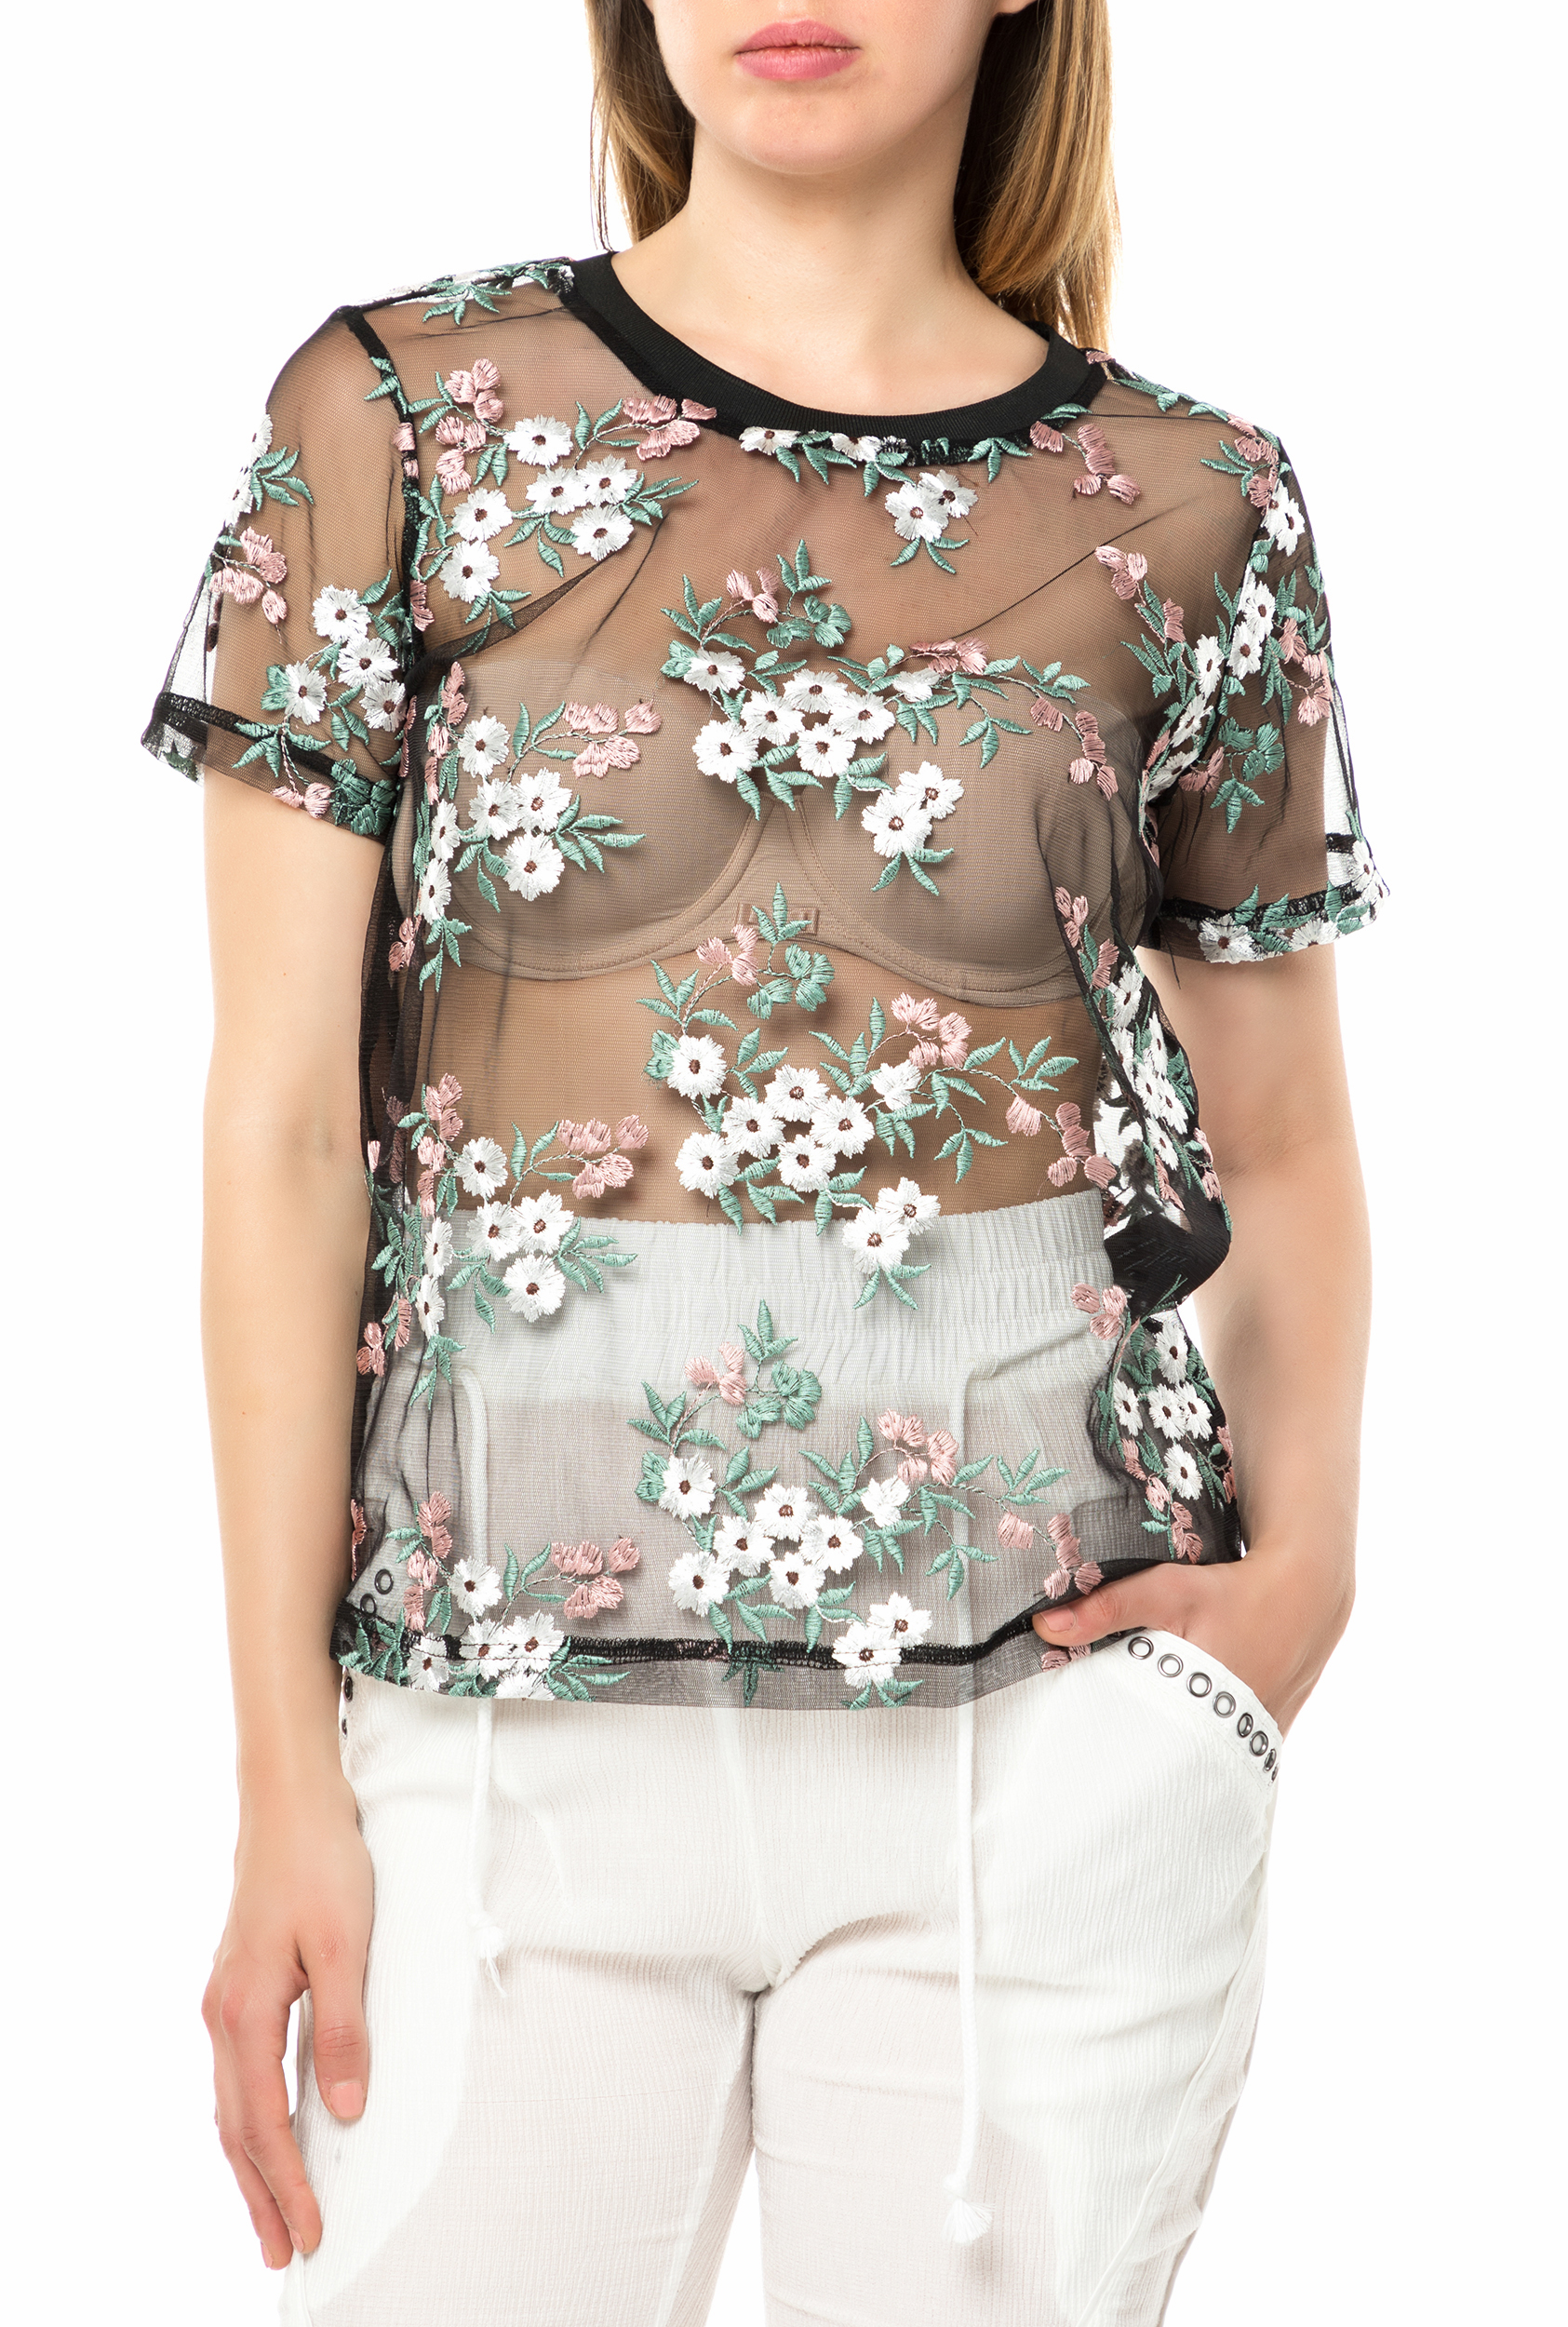 Γυναικεία/Ρούχα/Μπλούζες/Τοπ NU - Γυναικείο διάφανο τοπ NU με φλοράλ κεντήματα